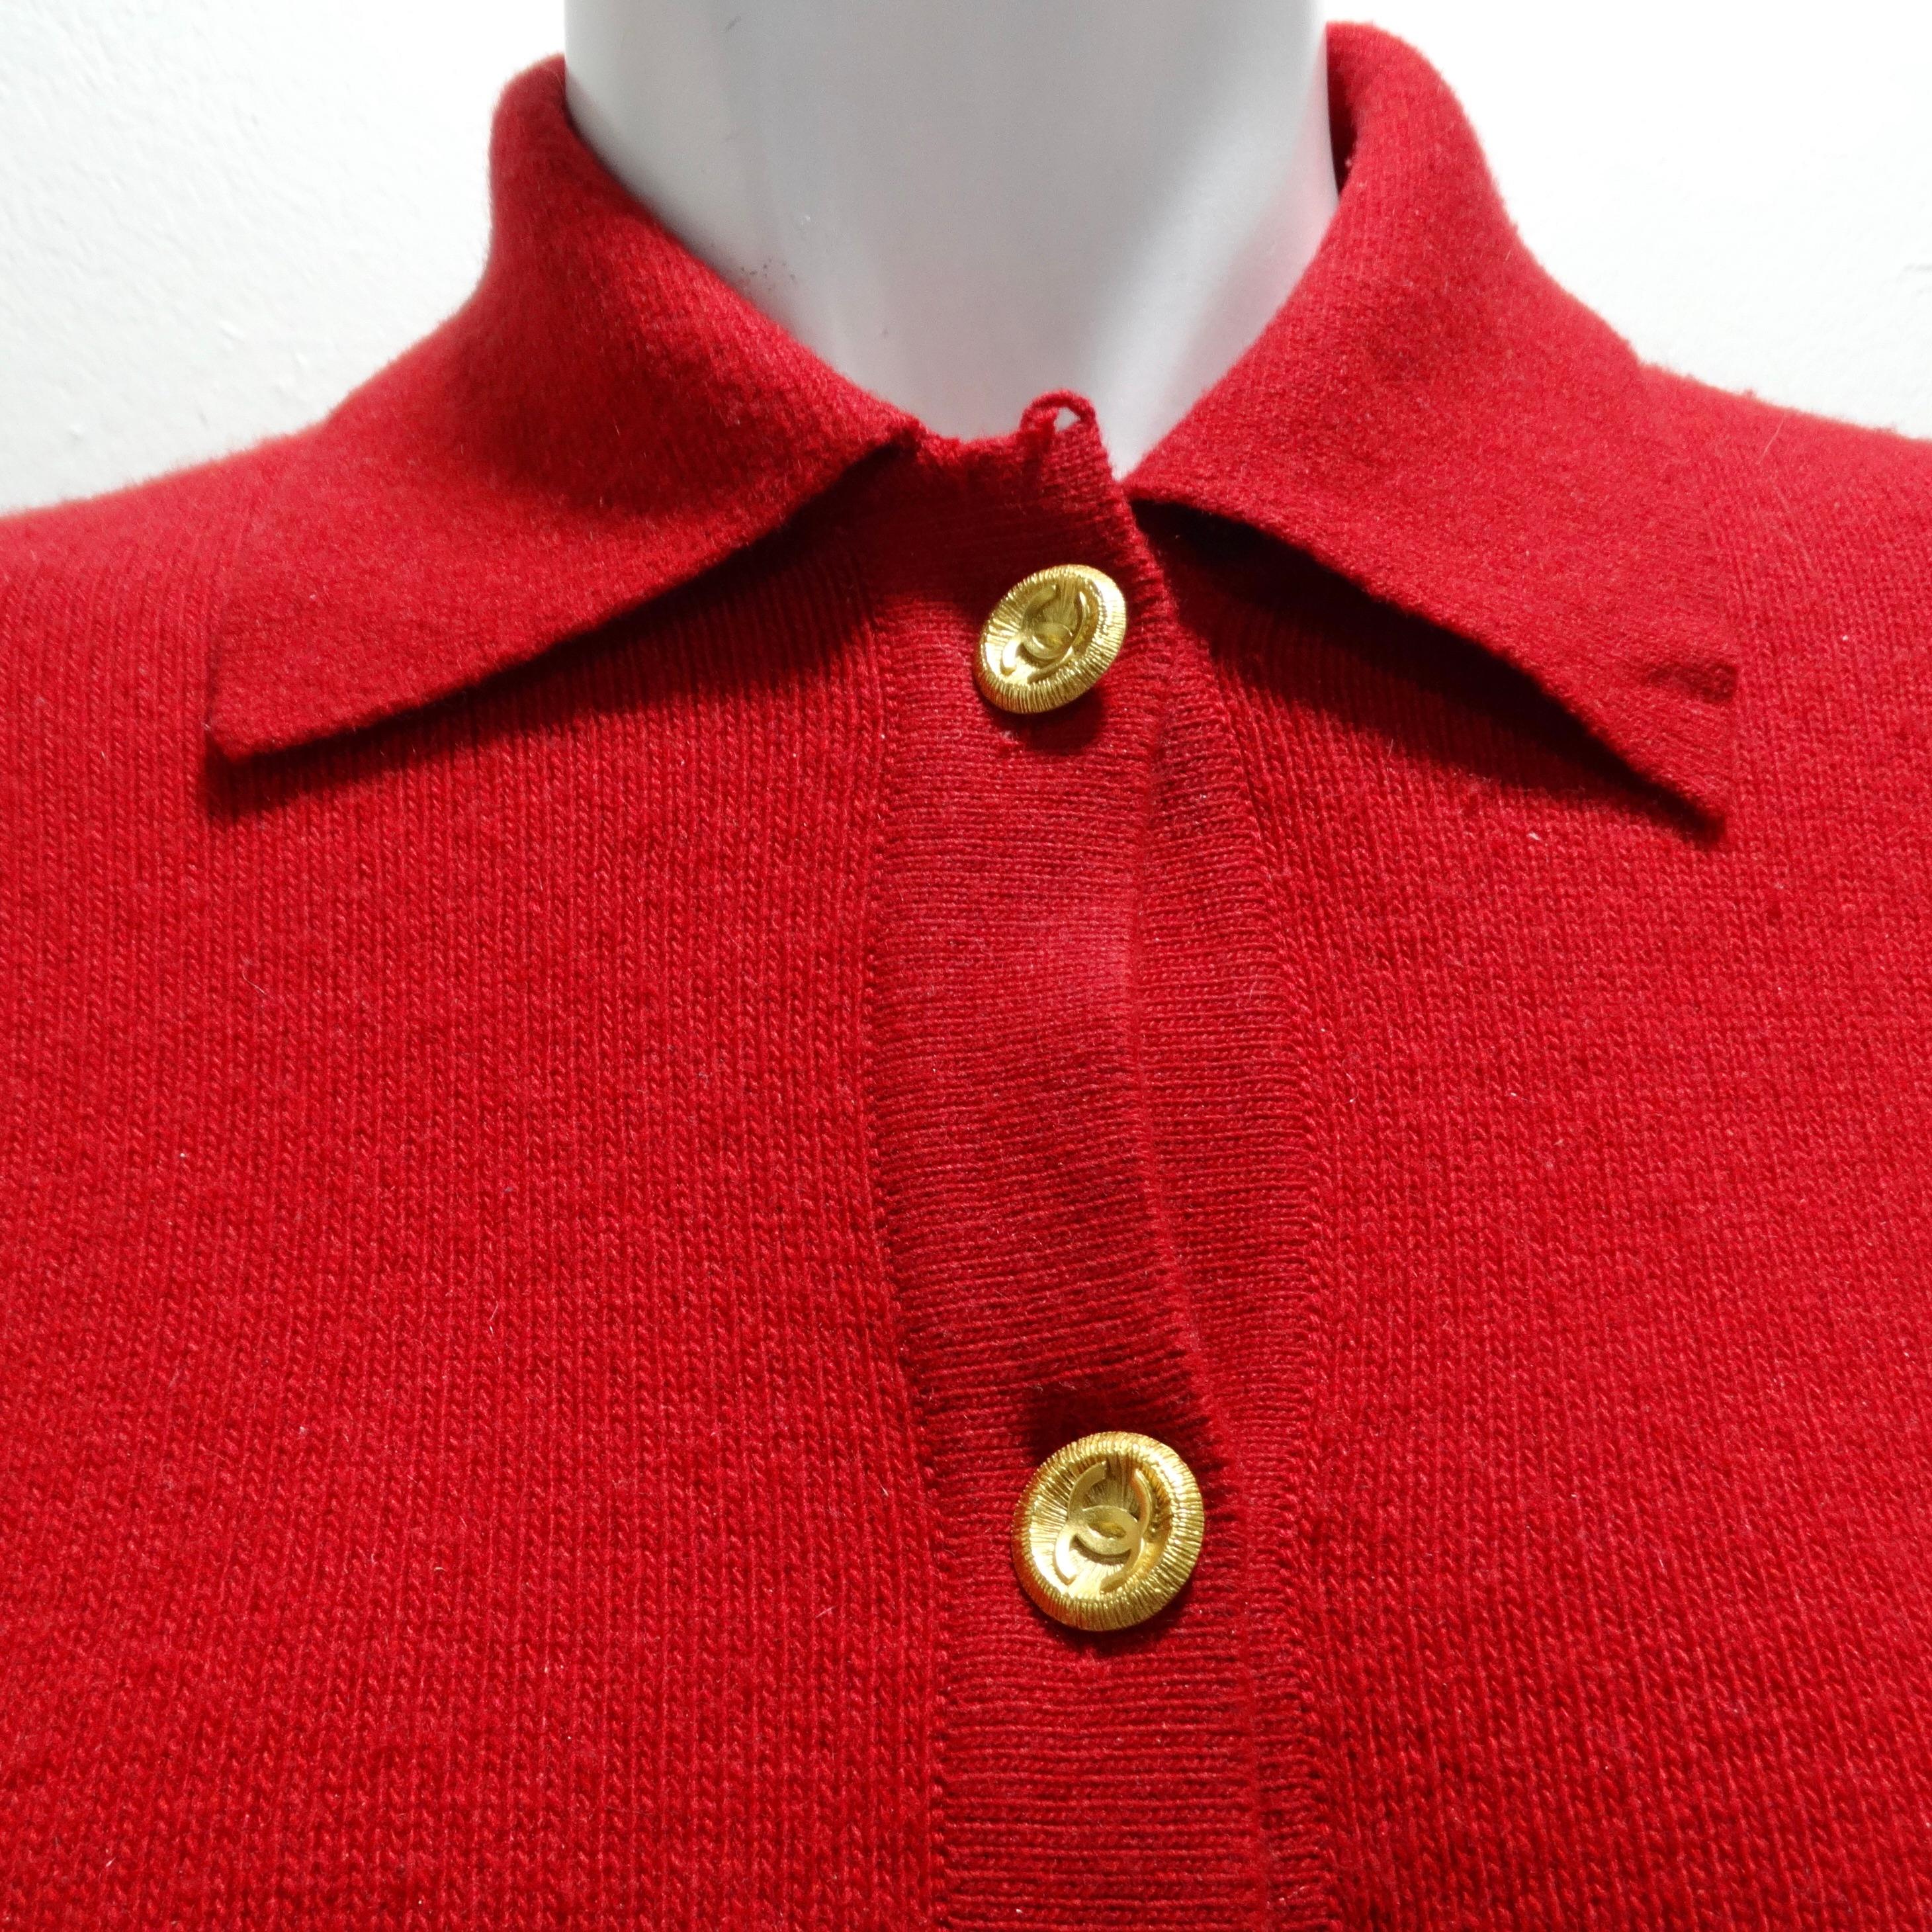 Offrez-vous le luxe avec le cardigan en cachemire rouge des années 90 de Chanel. Ce cardigan boutonné en cachemire épais est doté d'un col, de deux poches centrales et d'une pléthore de boutons brillants en or jaune, chacun orné du logo CC